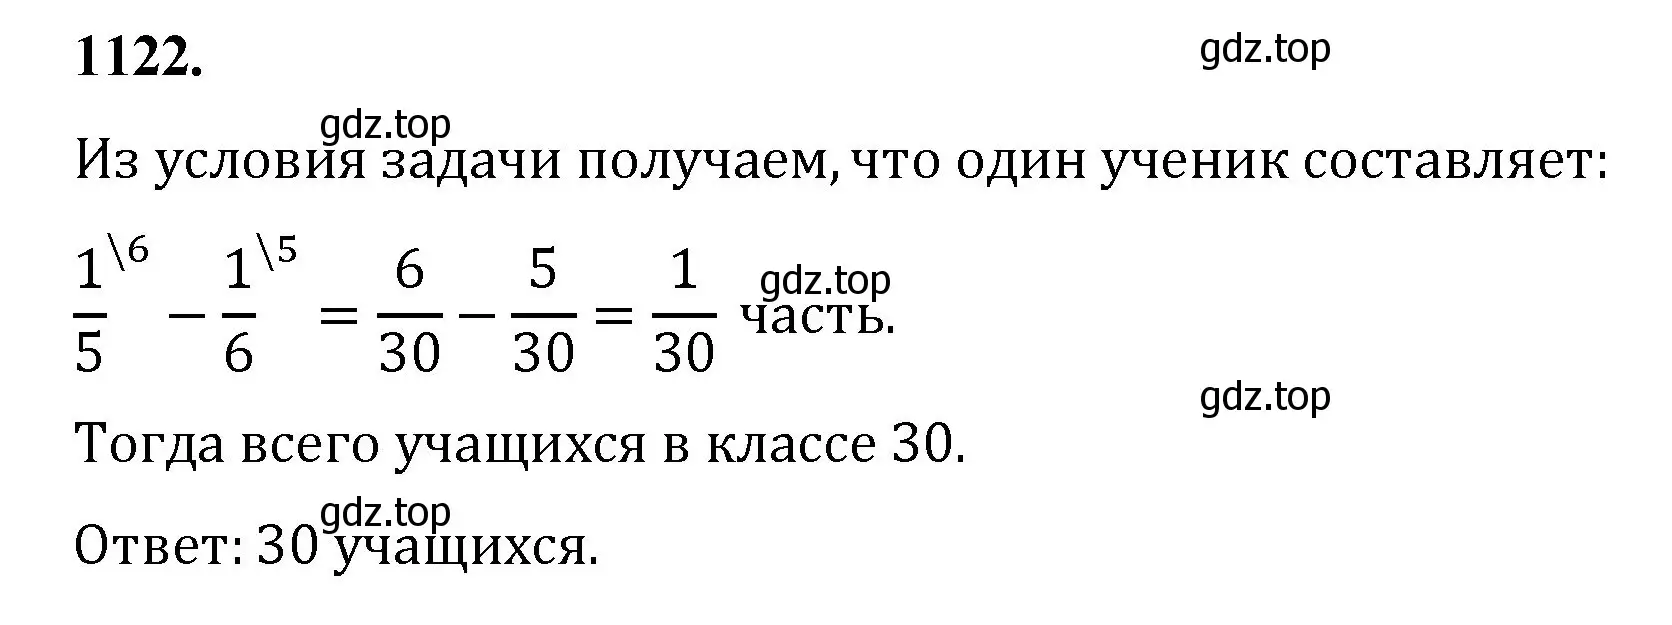 Решение номер 1122 (страница 249) гдз по математике 5 класс Мерзляк, Полонский, учебник